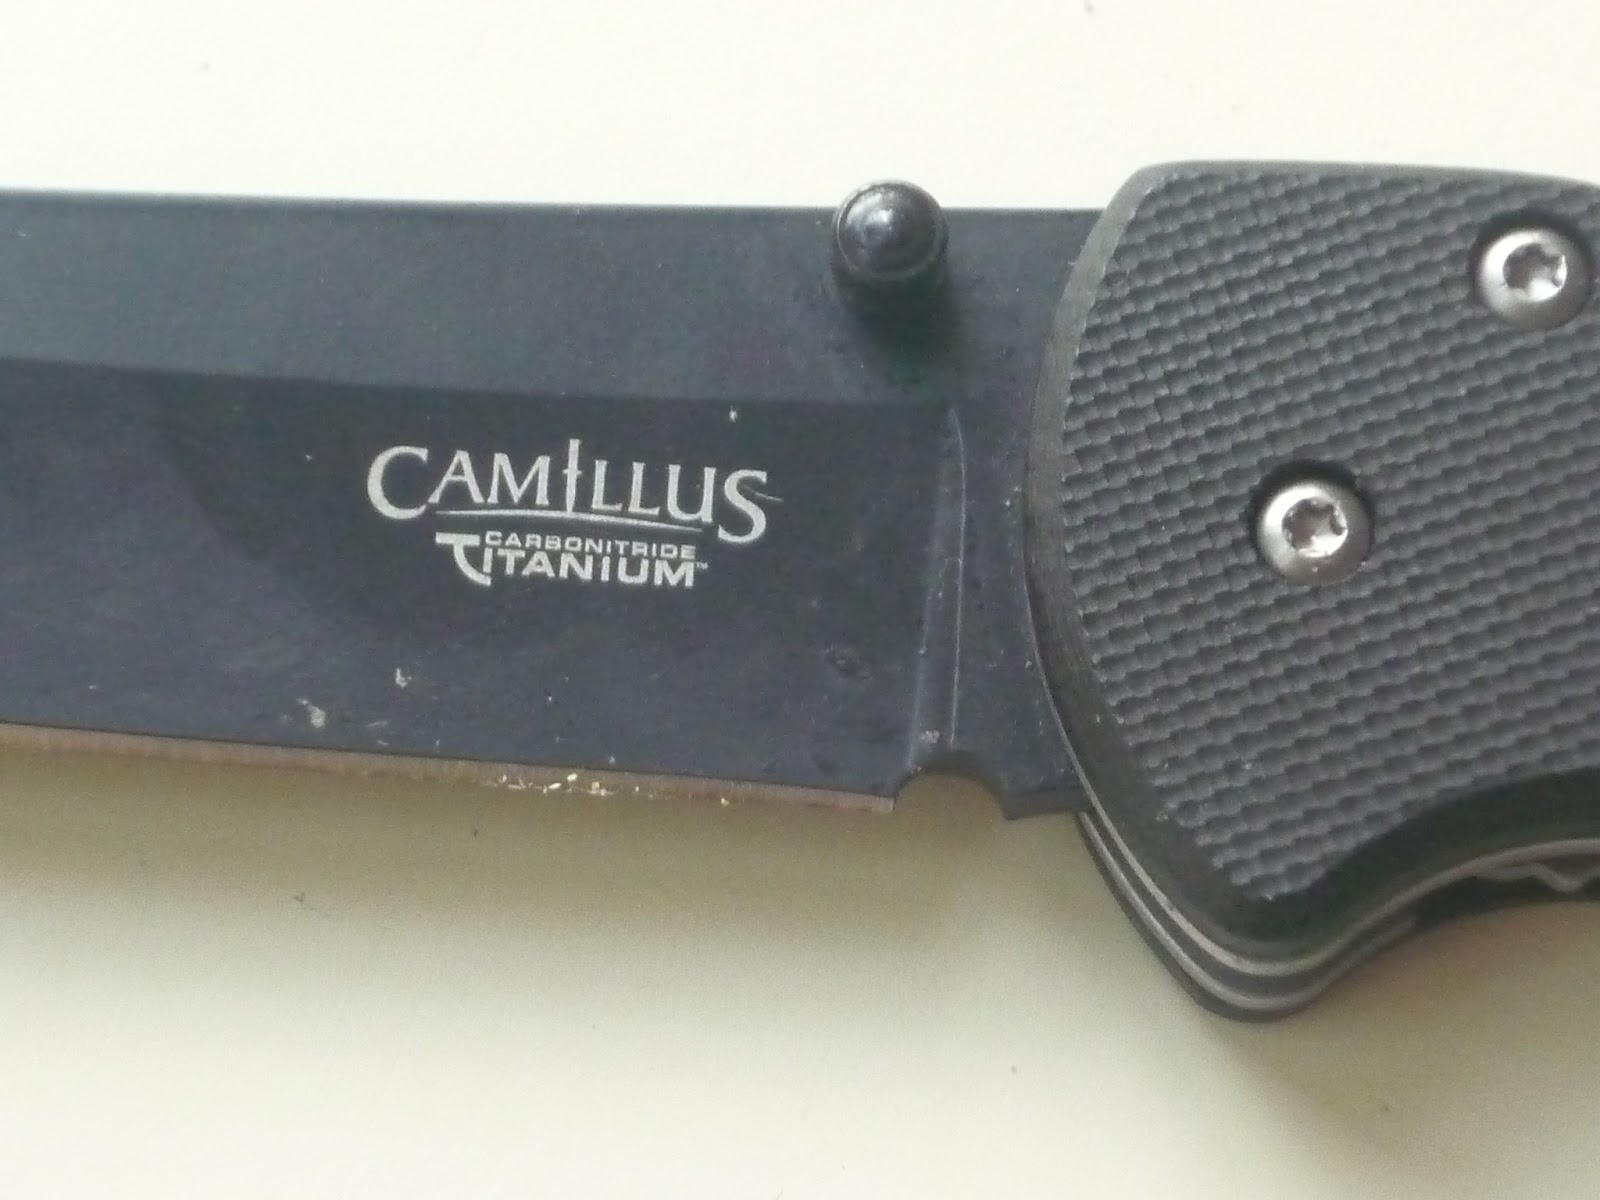 Camillus SAILOR'S MARLIN SPIKE KNIFE